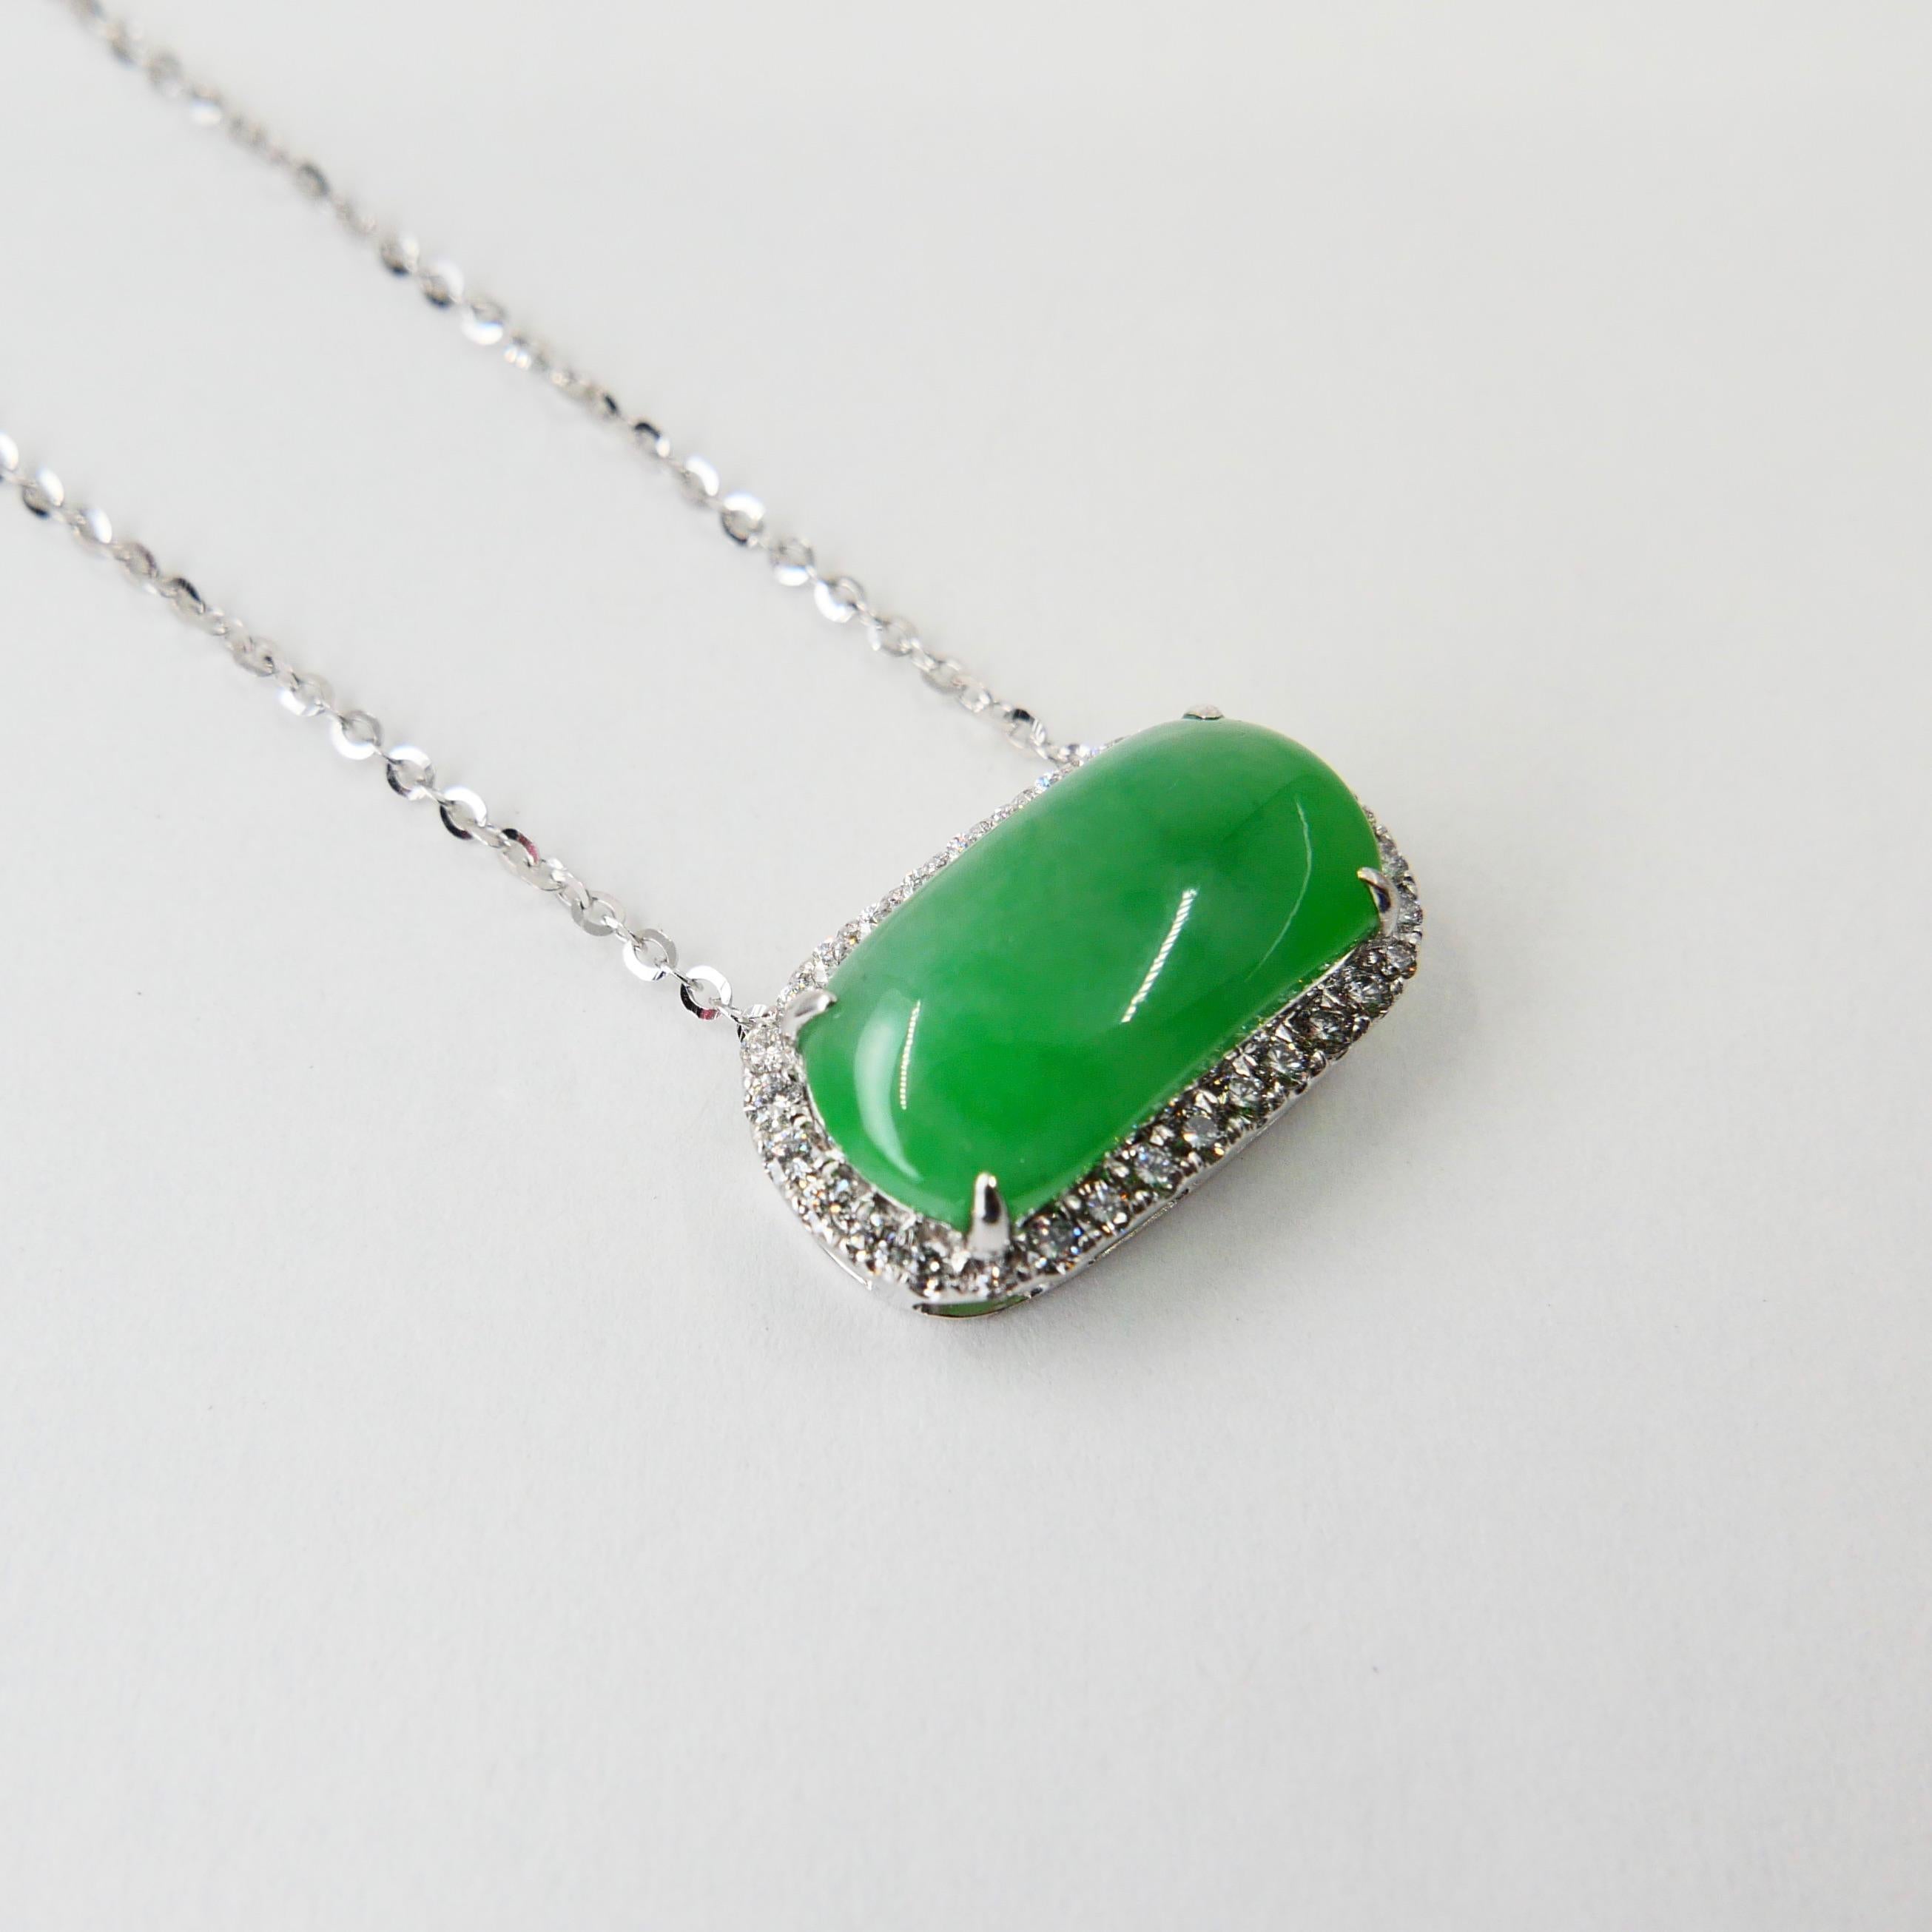 Certified Type A Jadeite Jade Diamond Pendant Drop Necklace, Apple Green Color For Sale 9